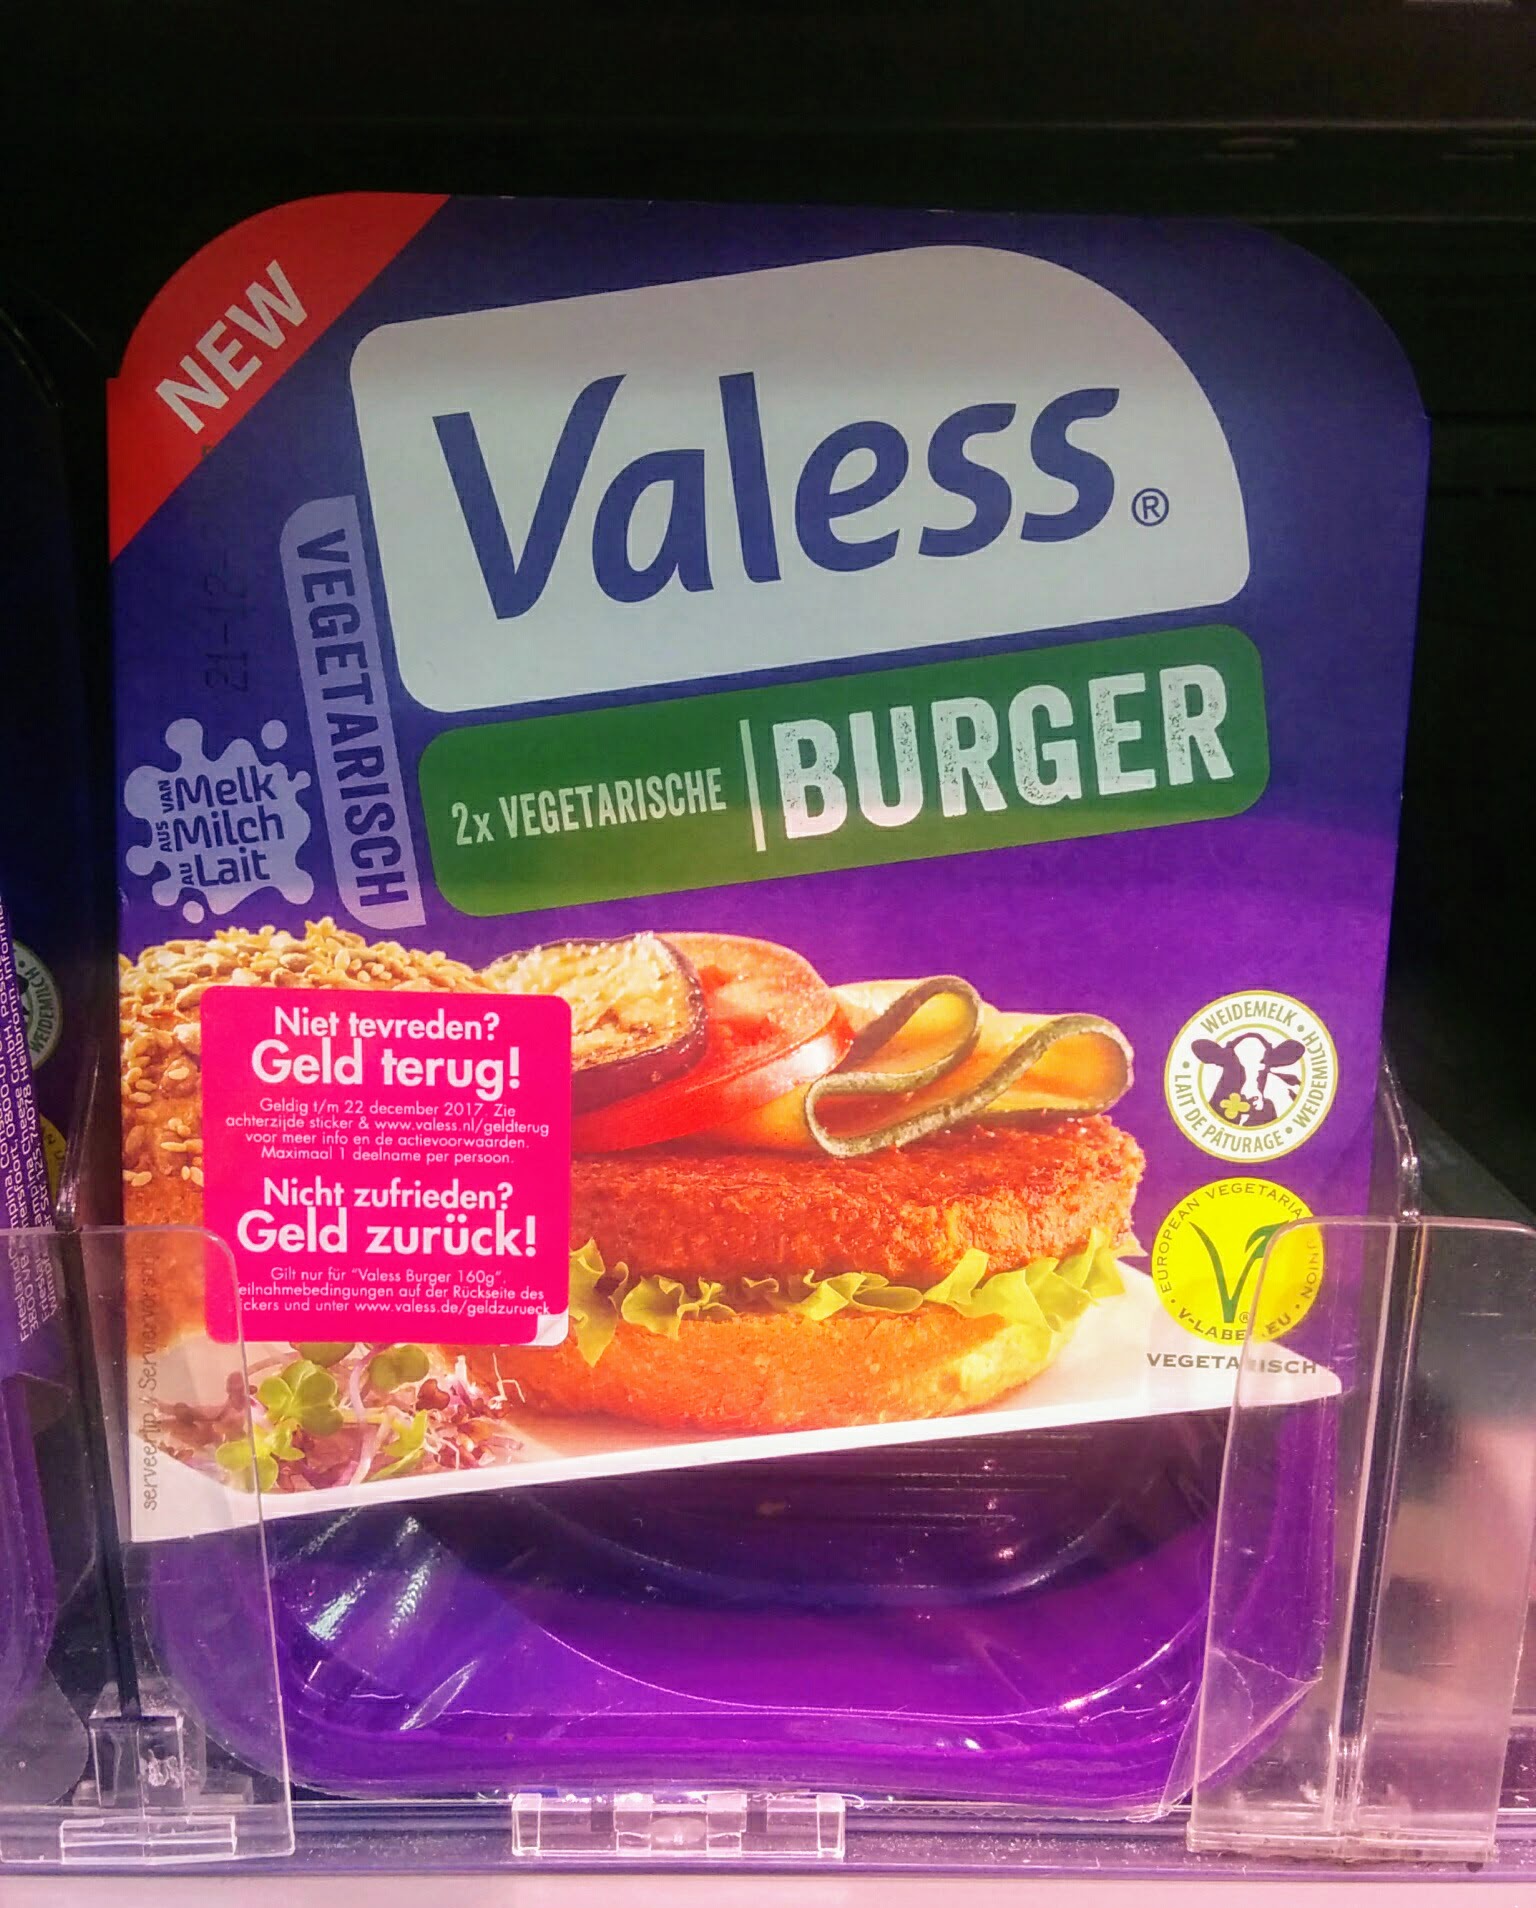 Valess Burger vegetarisch